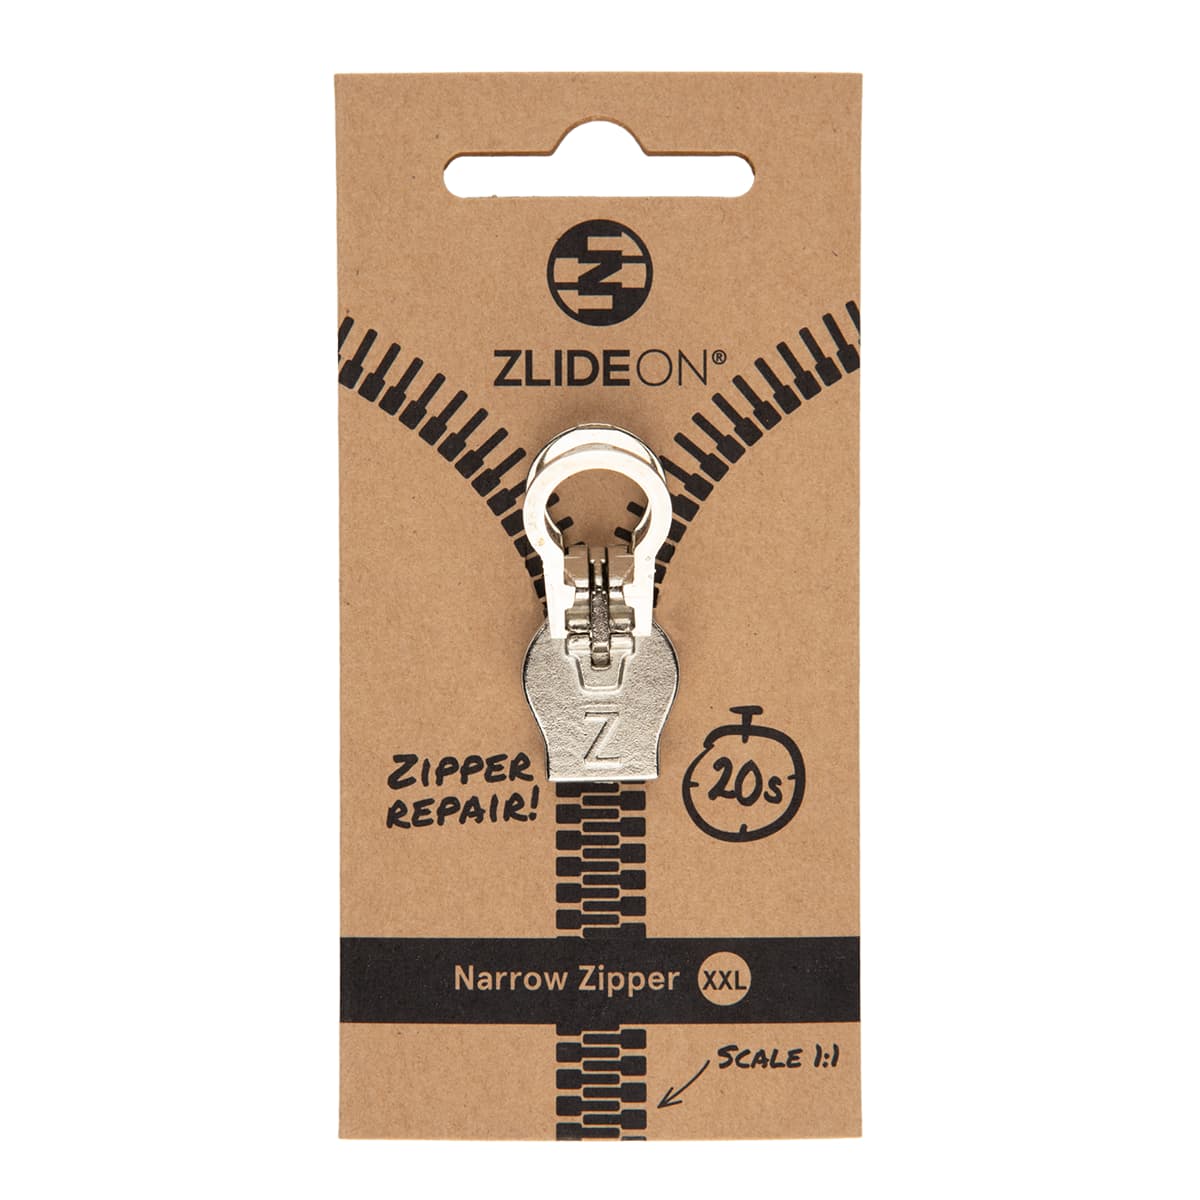 ZlideOn Narrow Zipper Replacement Zipper